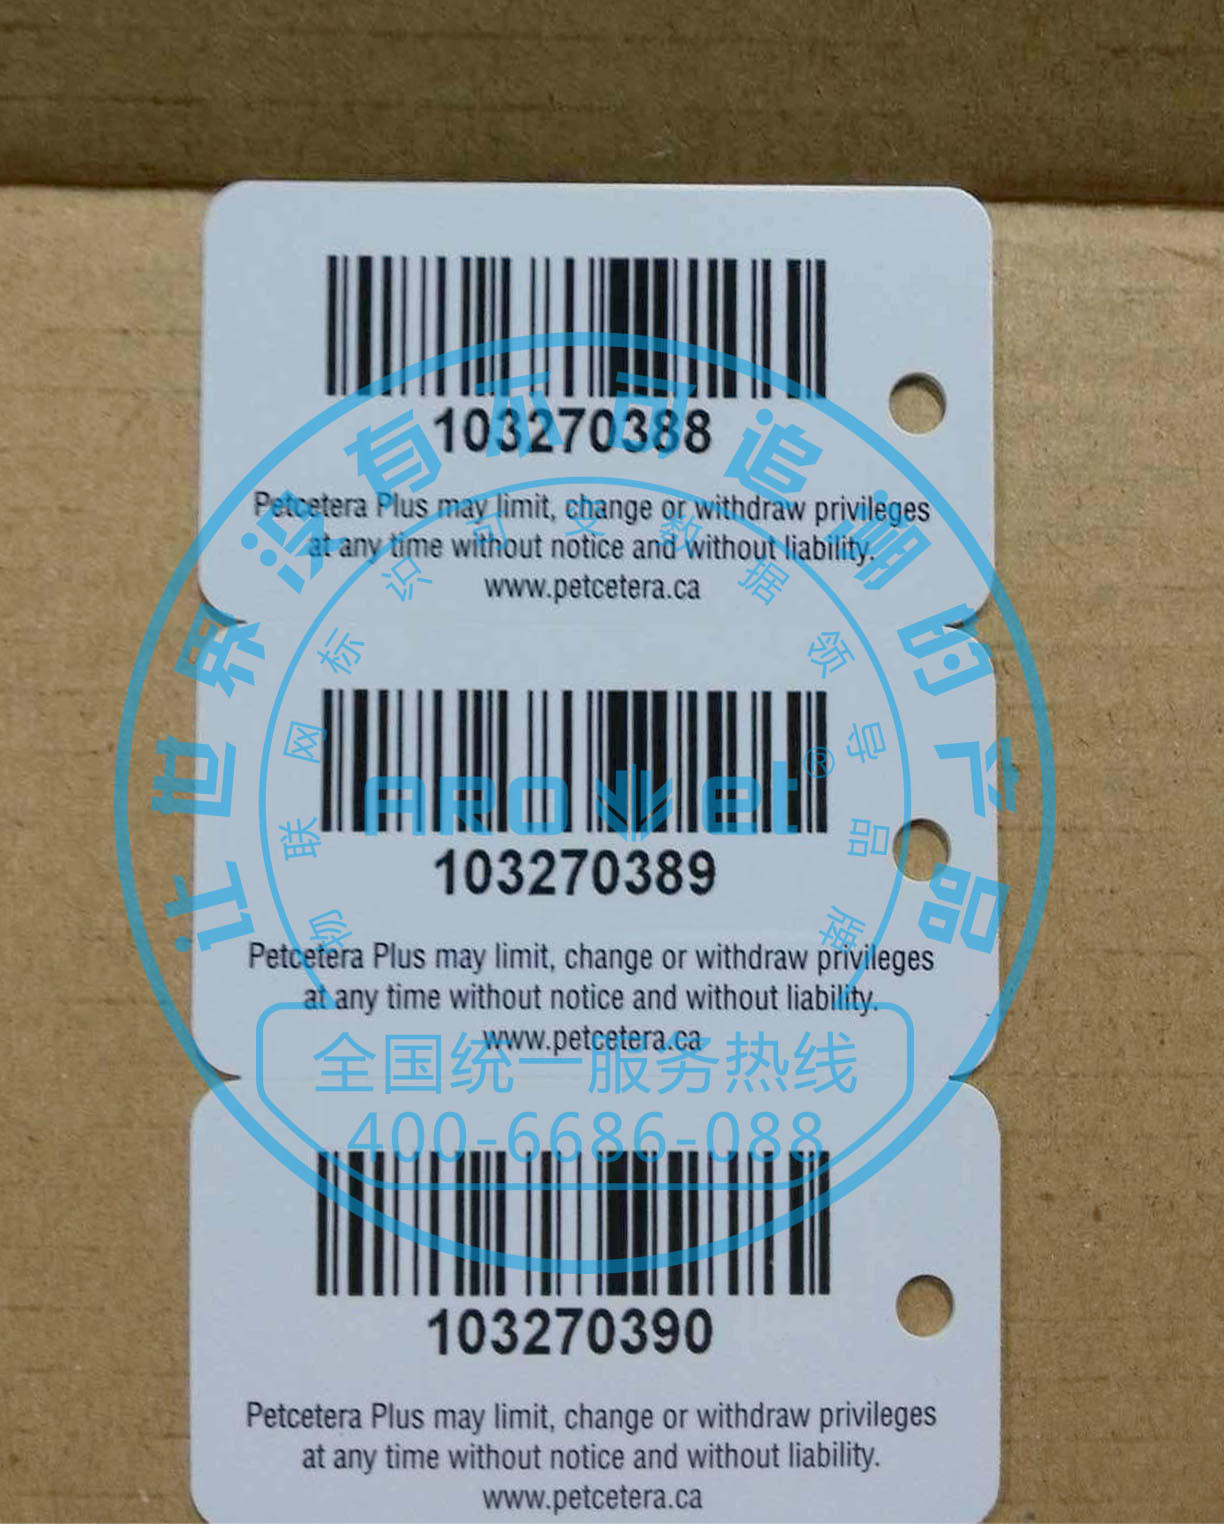 UV Dod Labels Plastic Cards Online Target Printing System